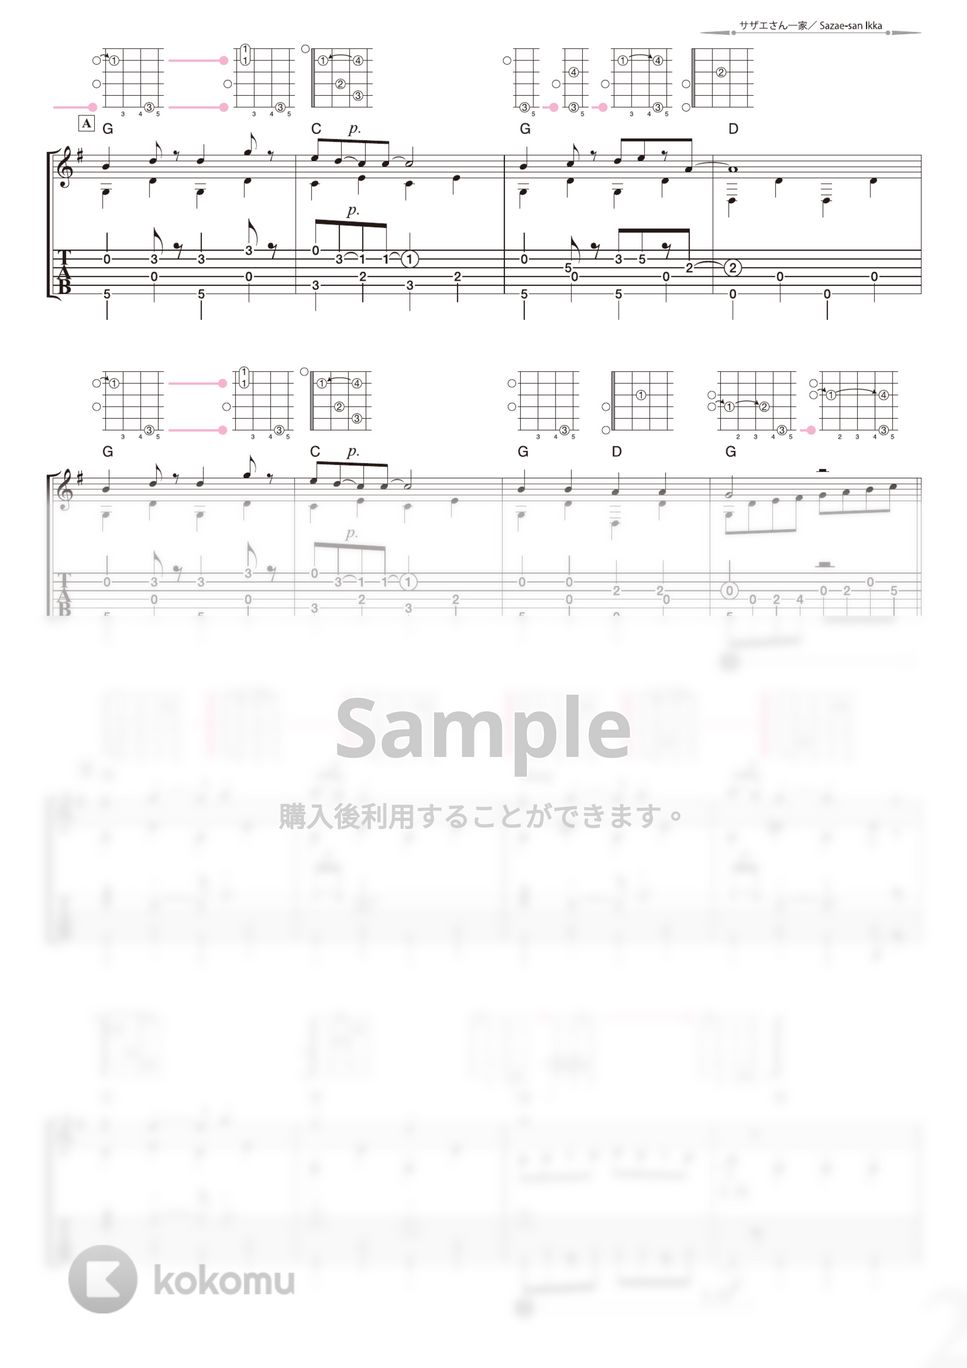 サザエさん - サザエさん一家 (ソロギター) by 南澤大介